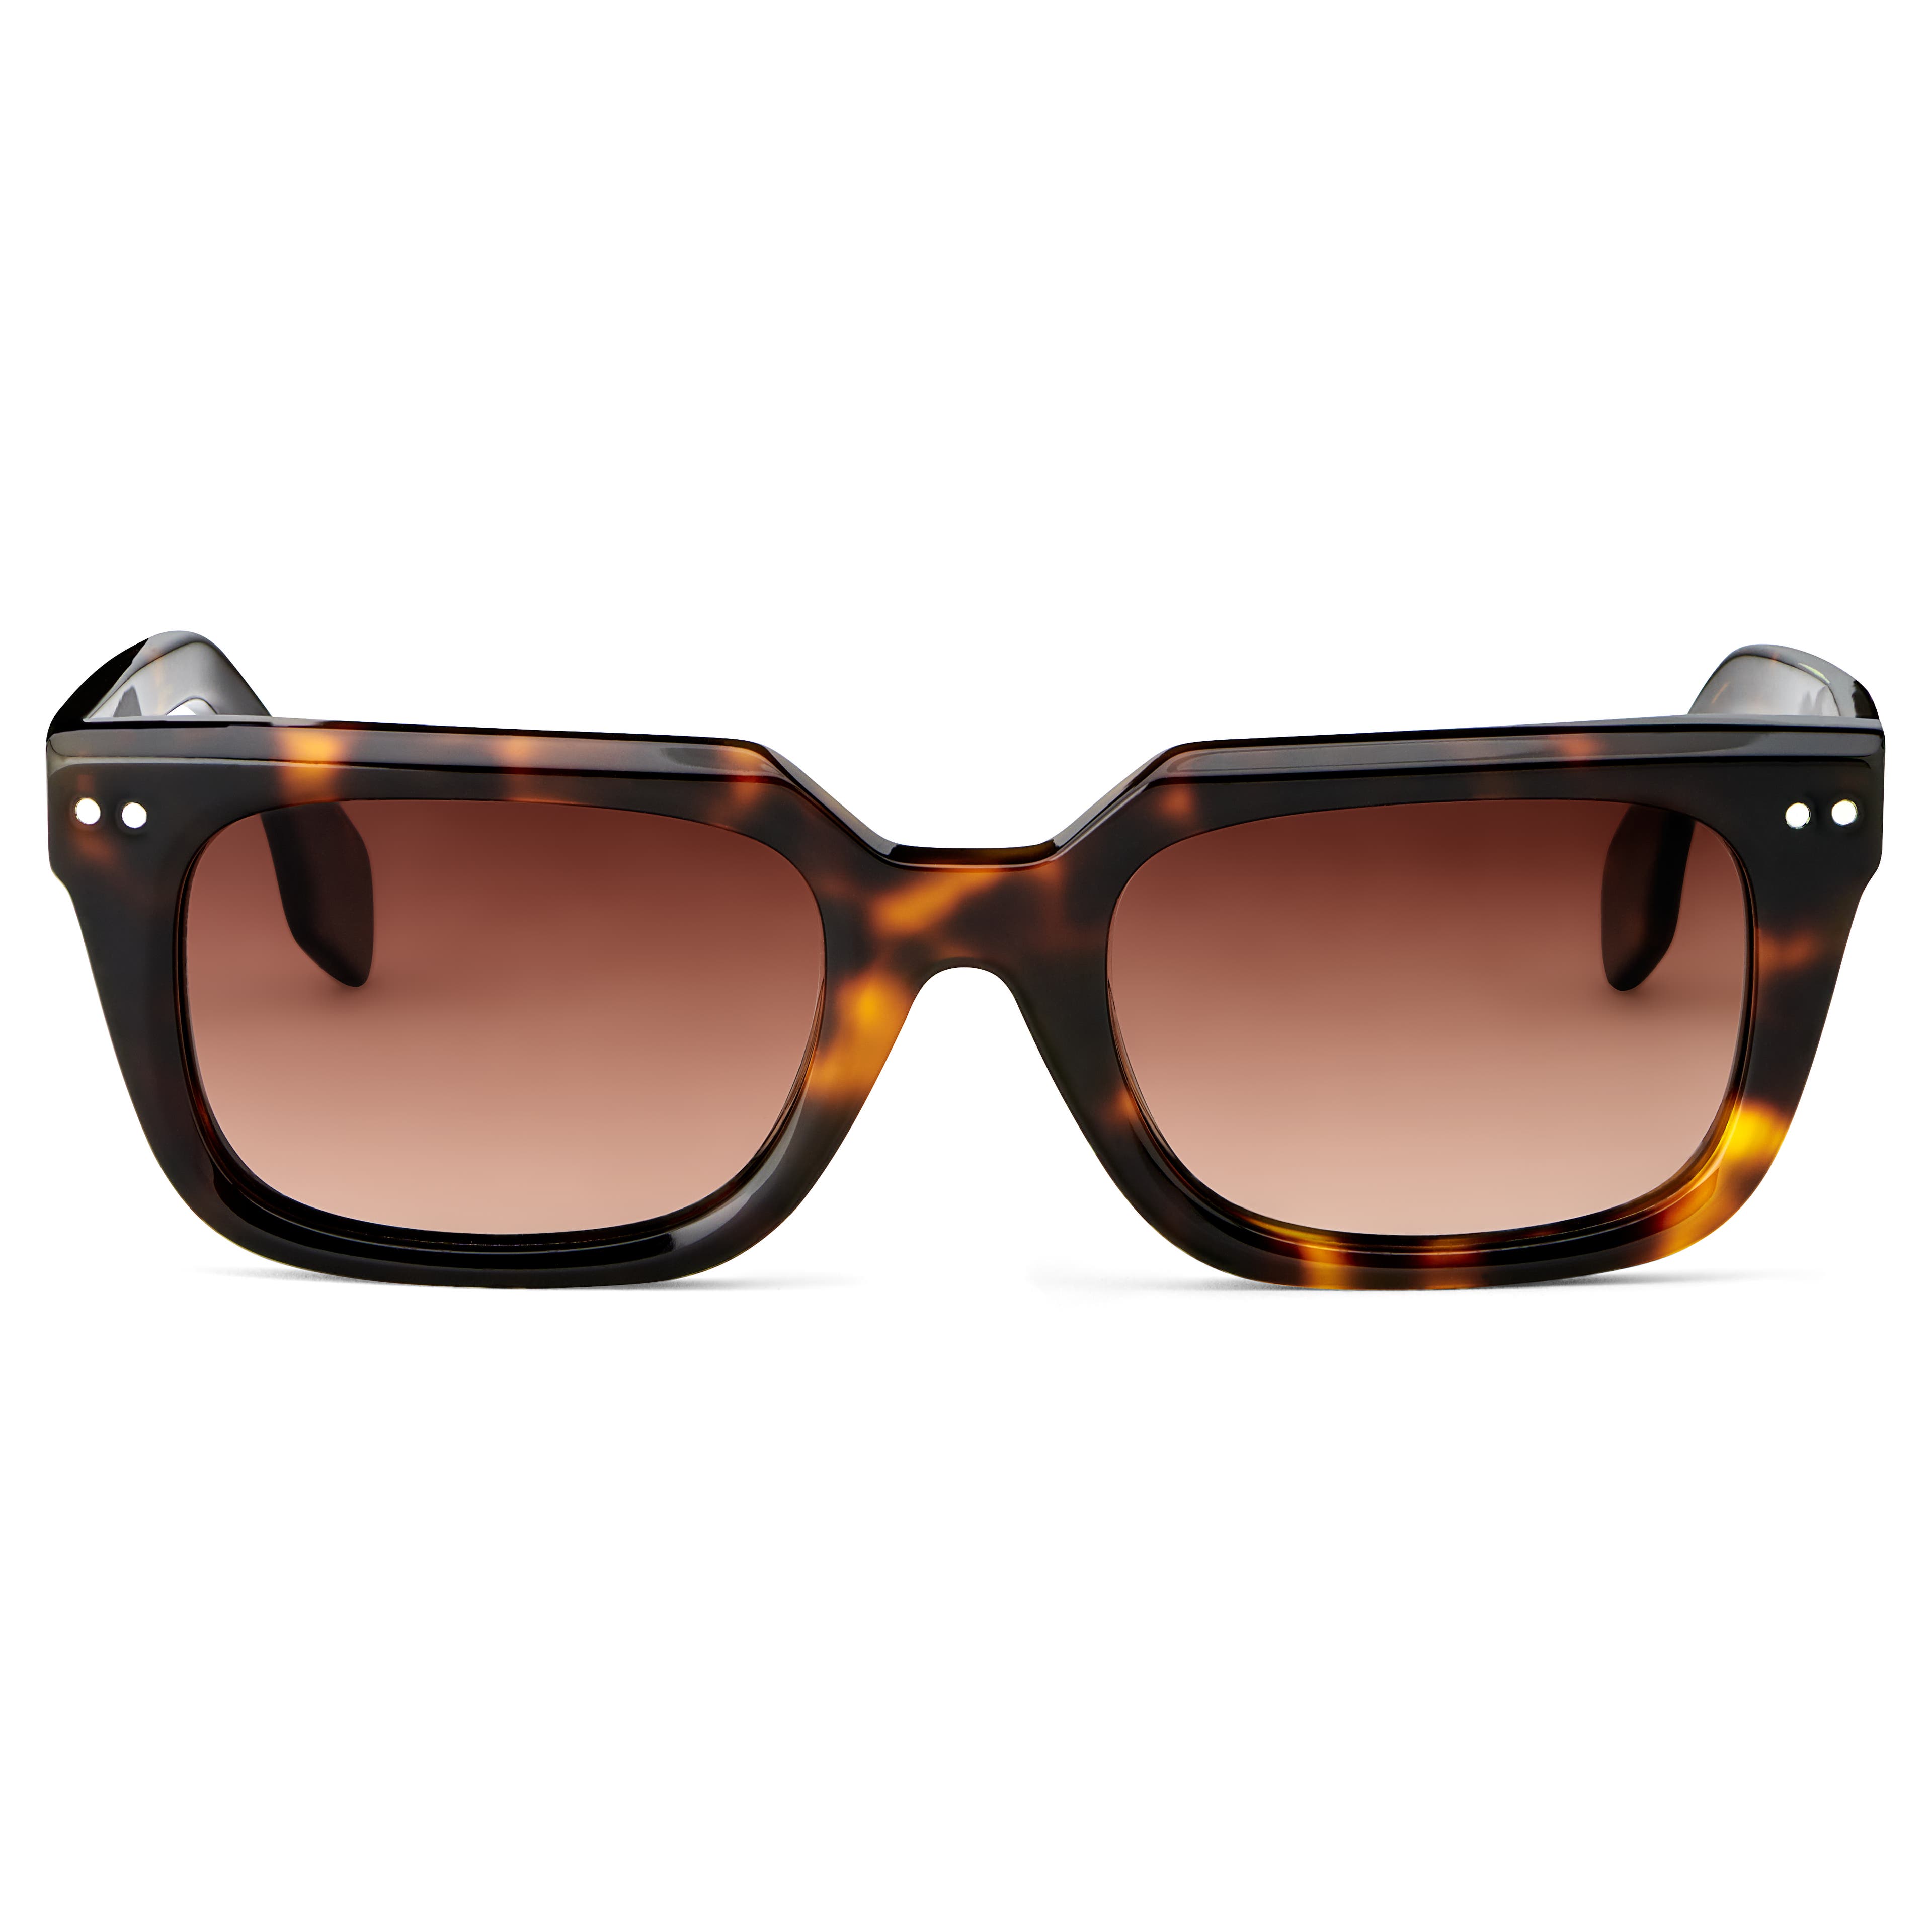 Tortoise Shell & Apricot Polarised Horn Rimmed Sunglasses